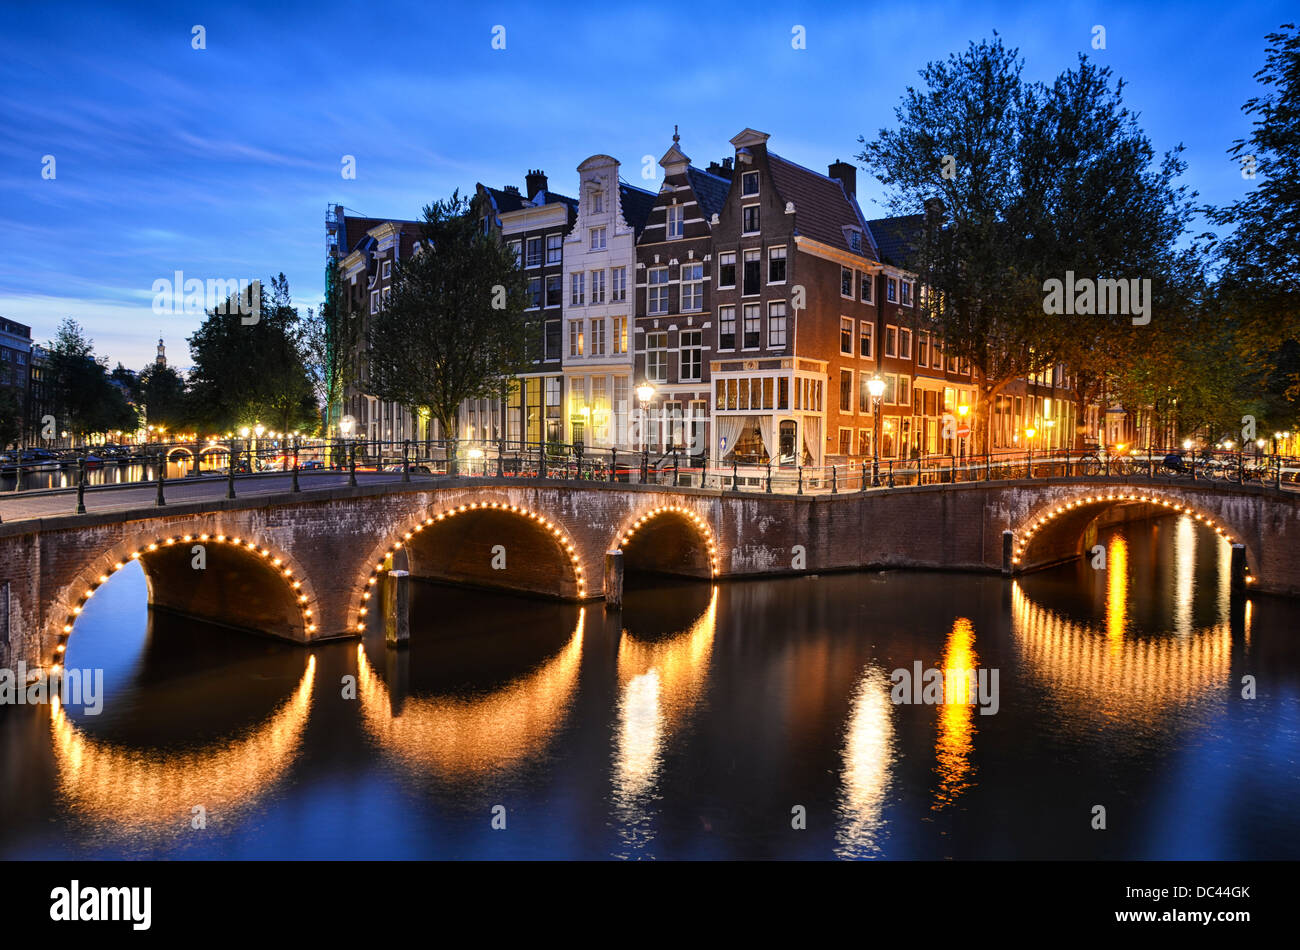 Scène de nuit à un canal montrant des maisons traditionnelles et un pont en arc à Amsterdam, Pays-Bas Banque D'Images